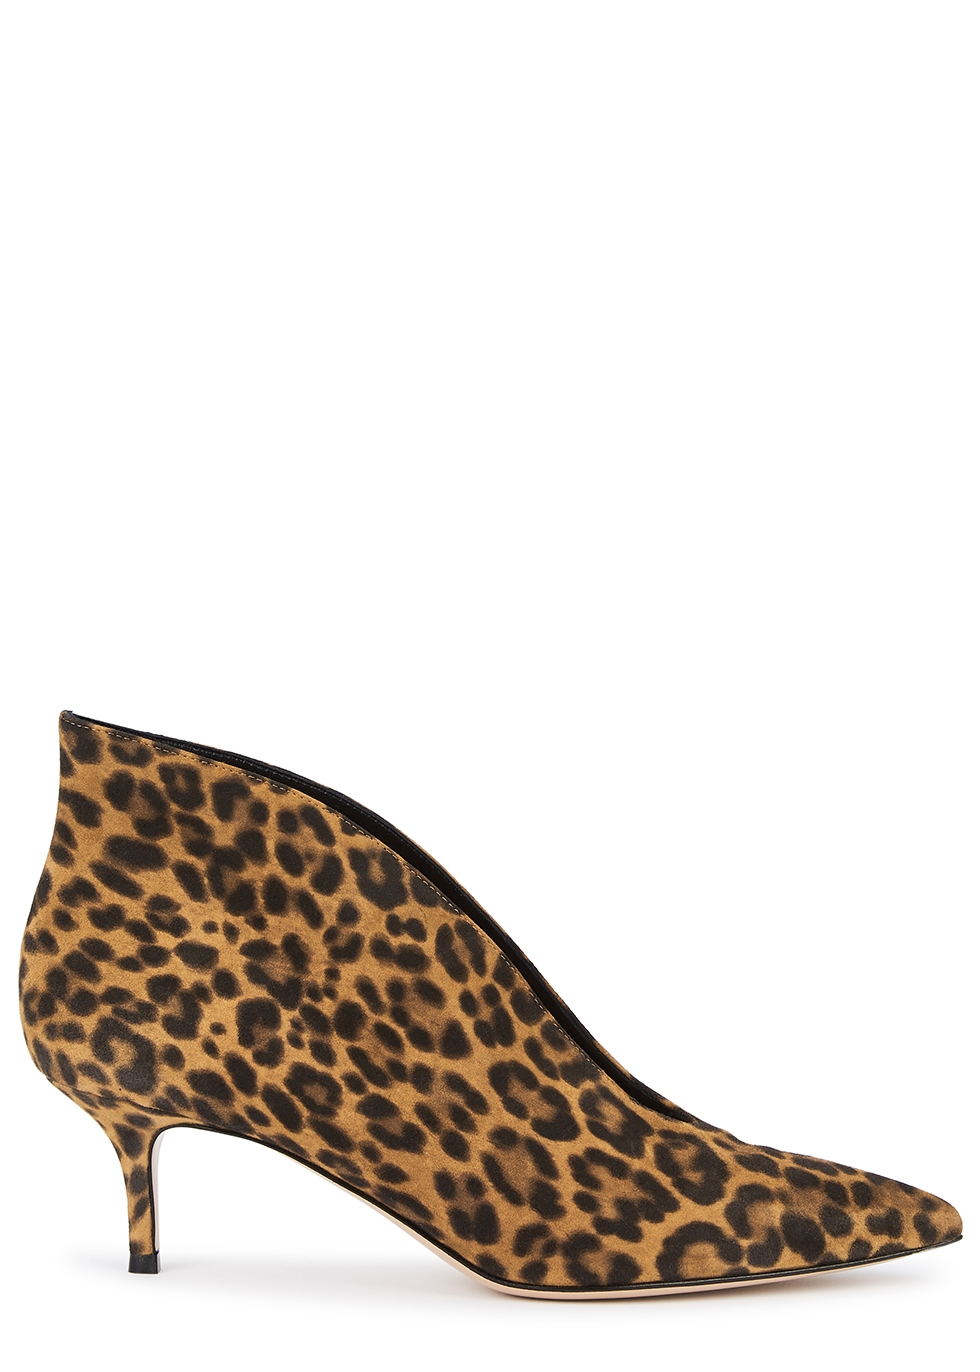 gianvito rossi leopard pumps